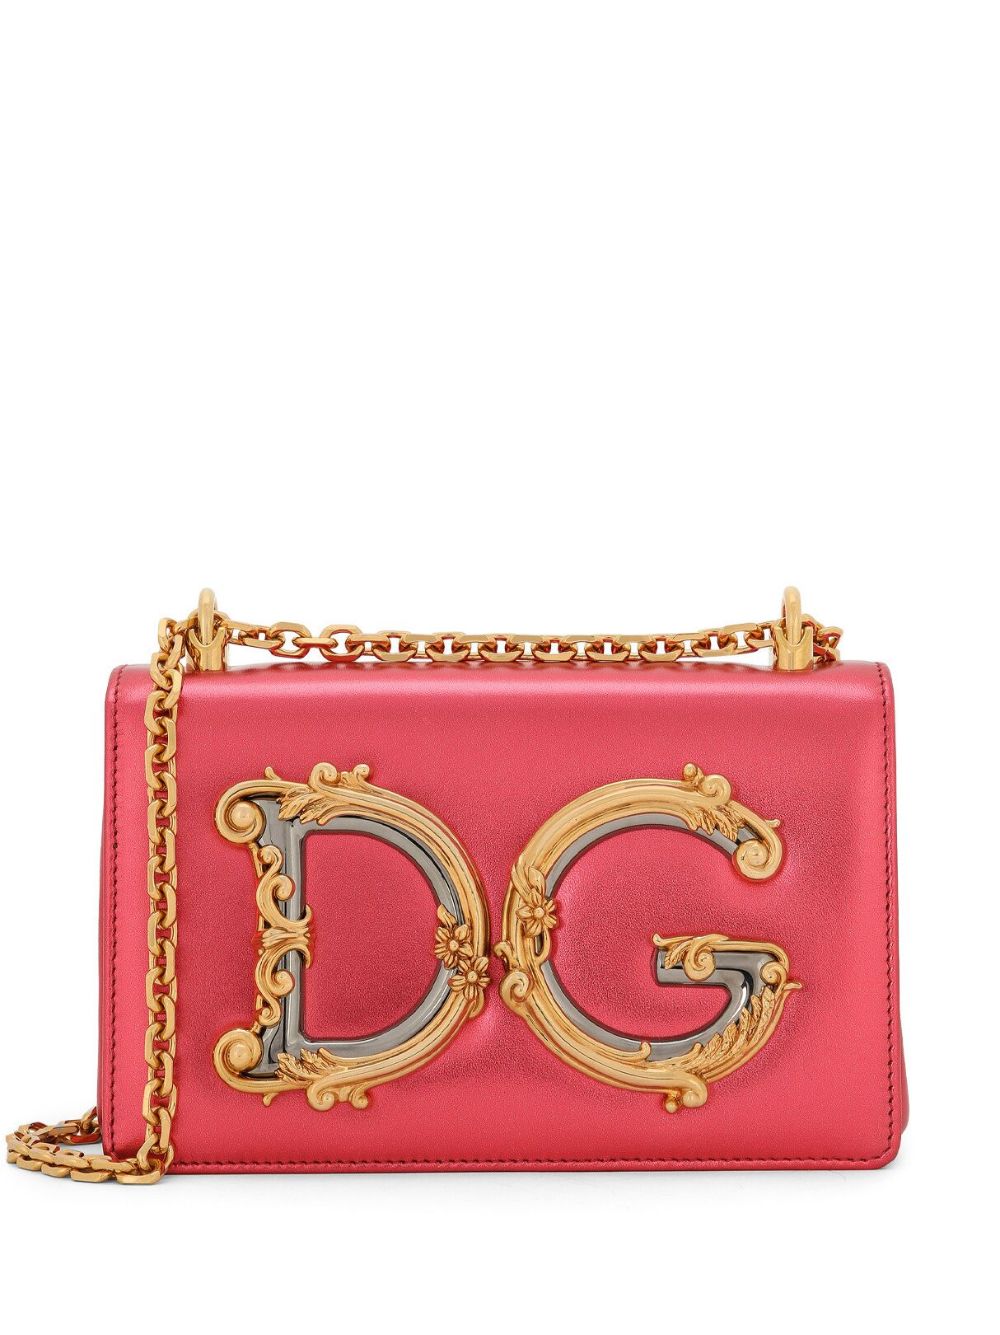 Image 1 of Dolce & Gabbana DG Girls Schultertasche